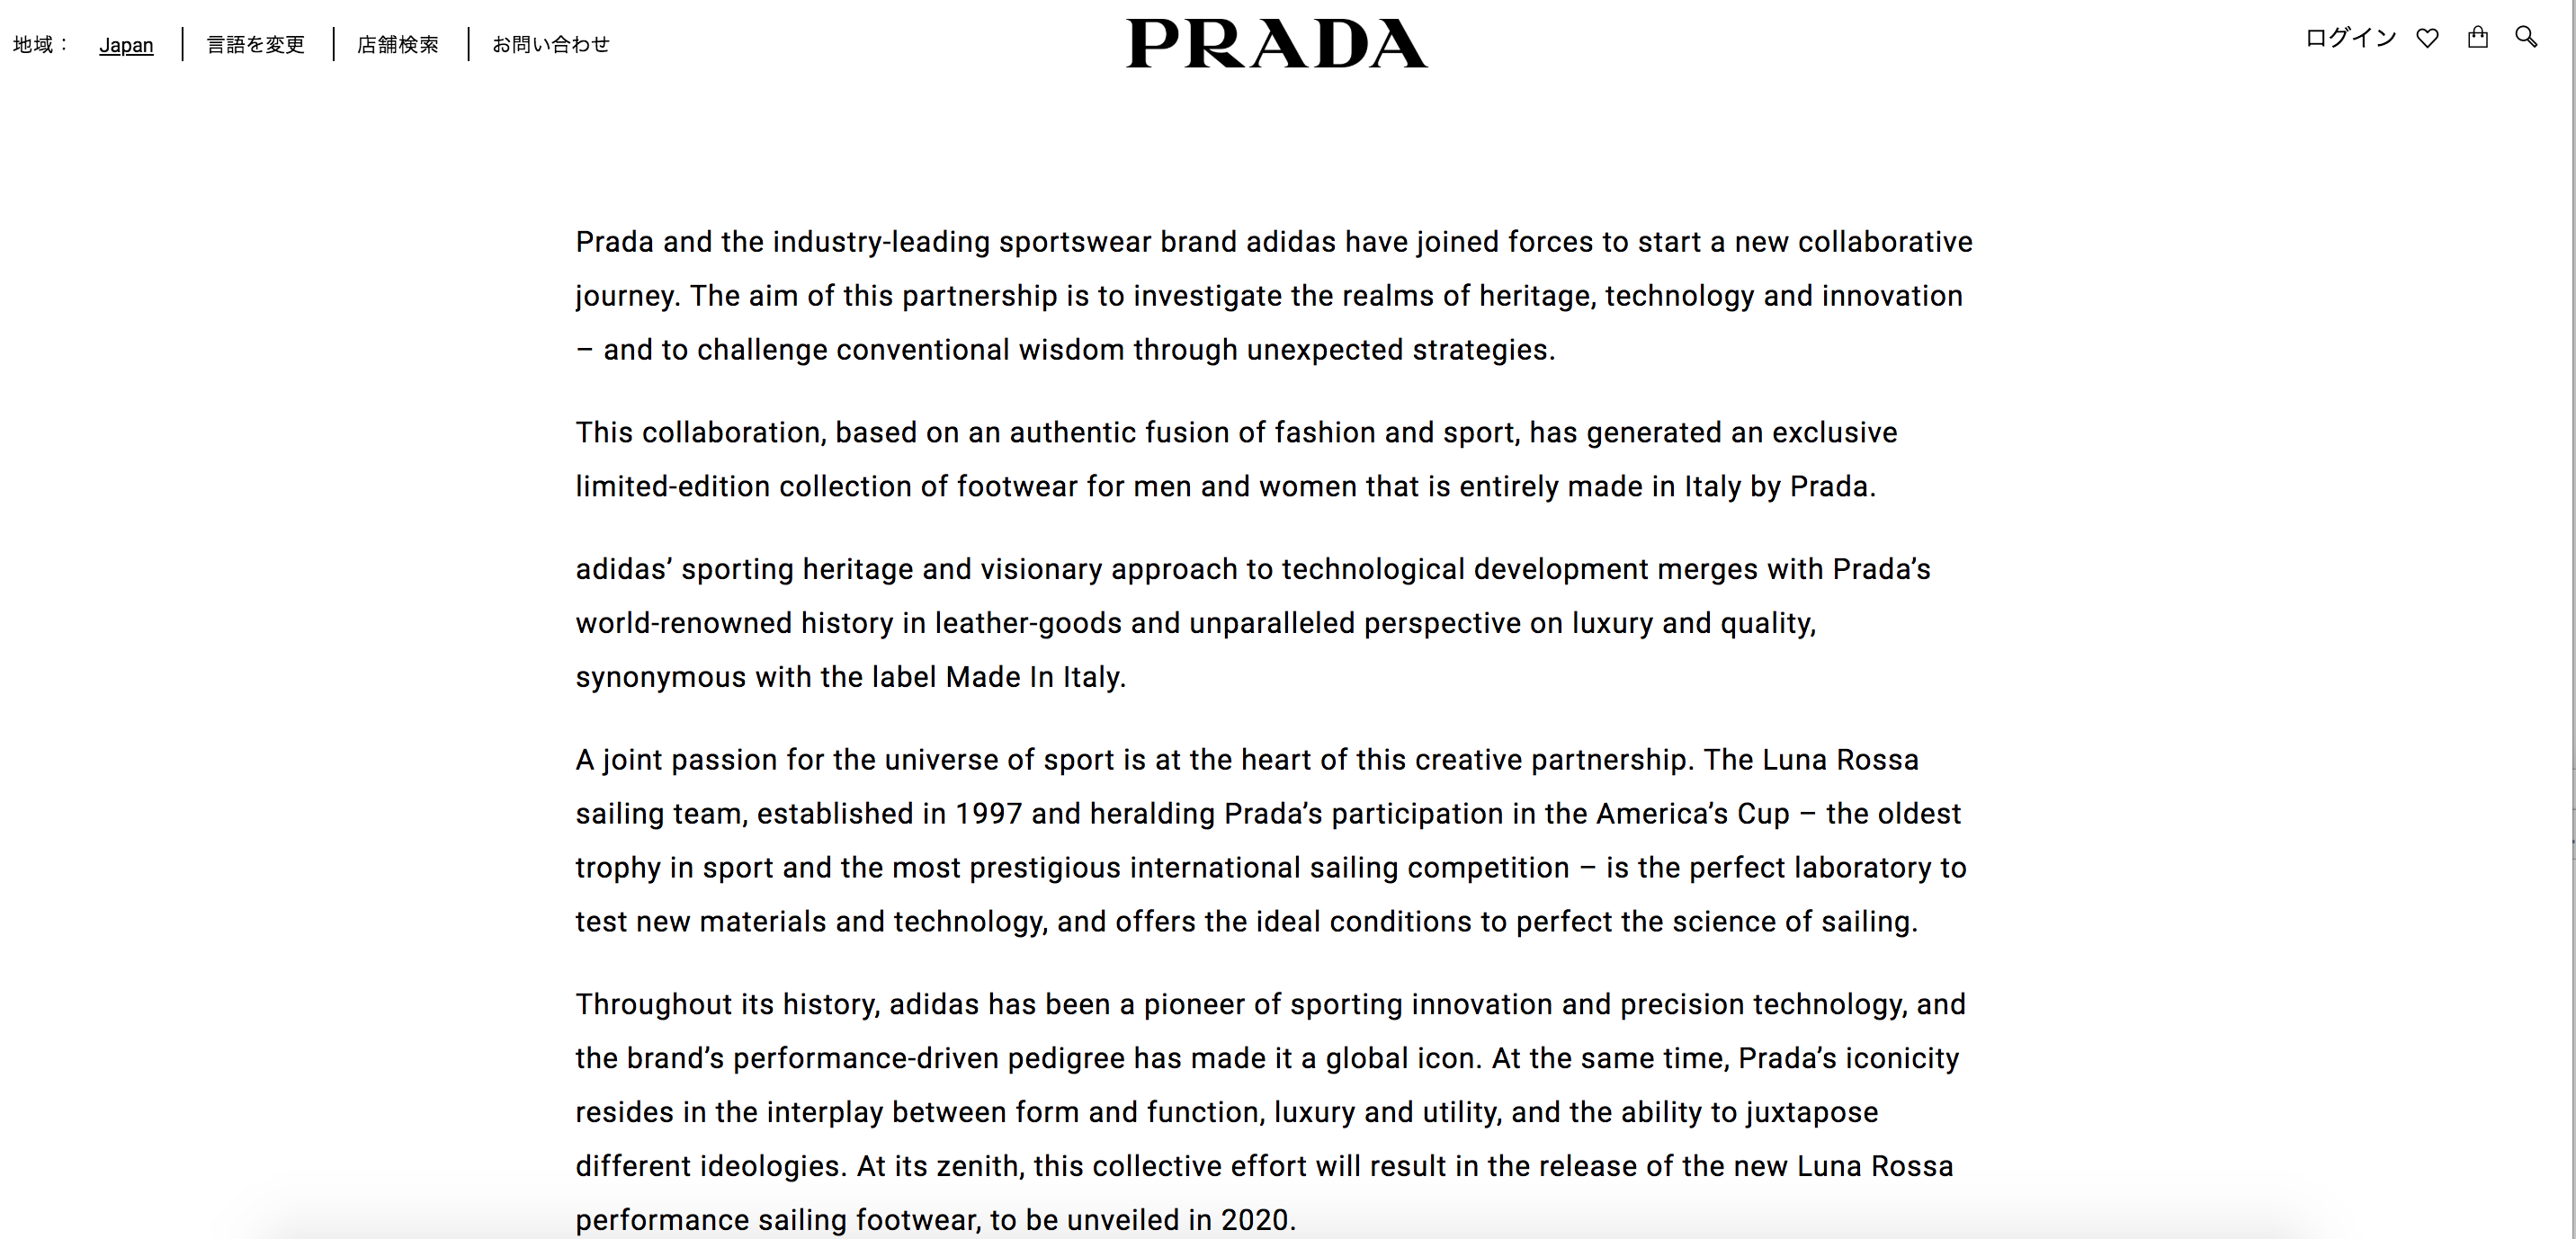 プラダxアディダスコラボの公式声明 (prada official statement for #pradaforadidas)